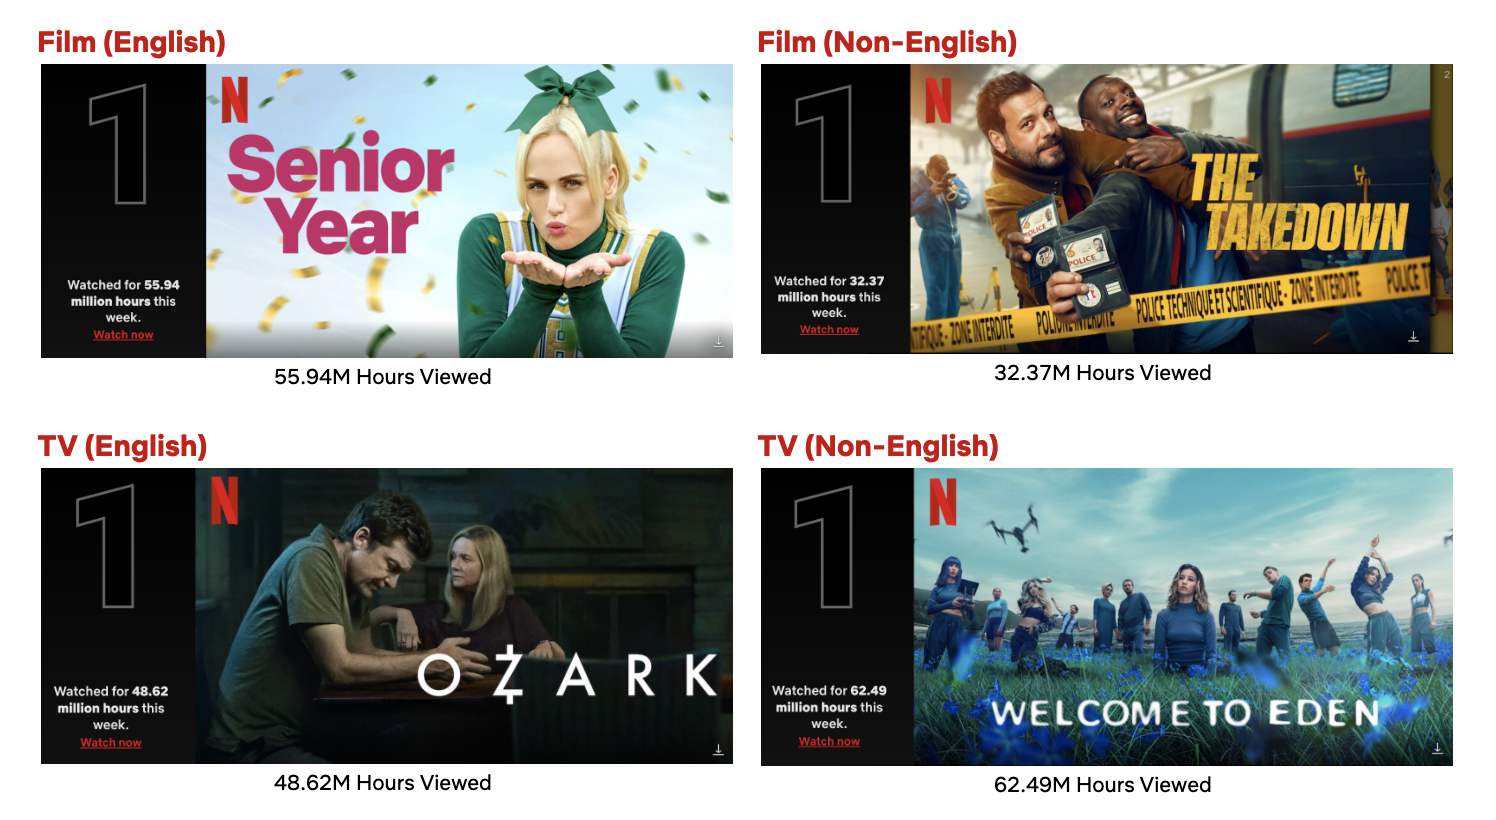 Confira os filmes coreanos que chegarão ao catálogo da Netflix em